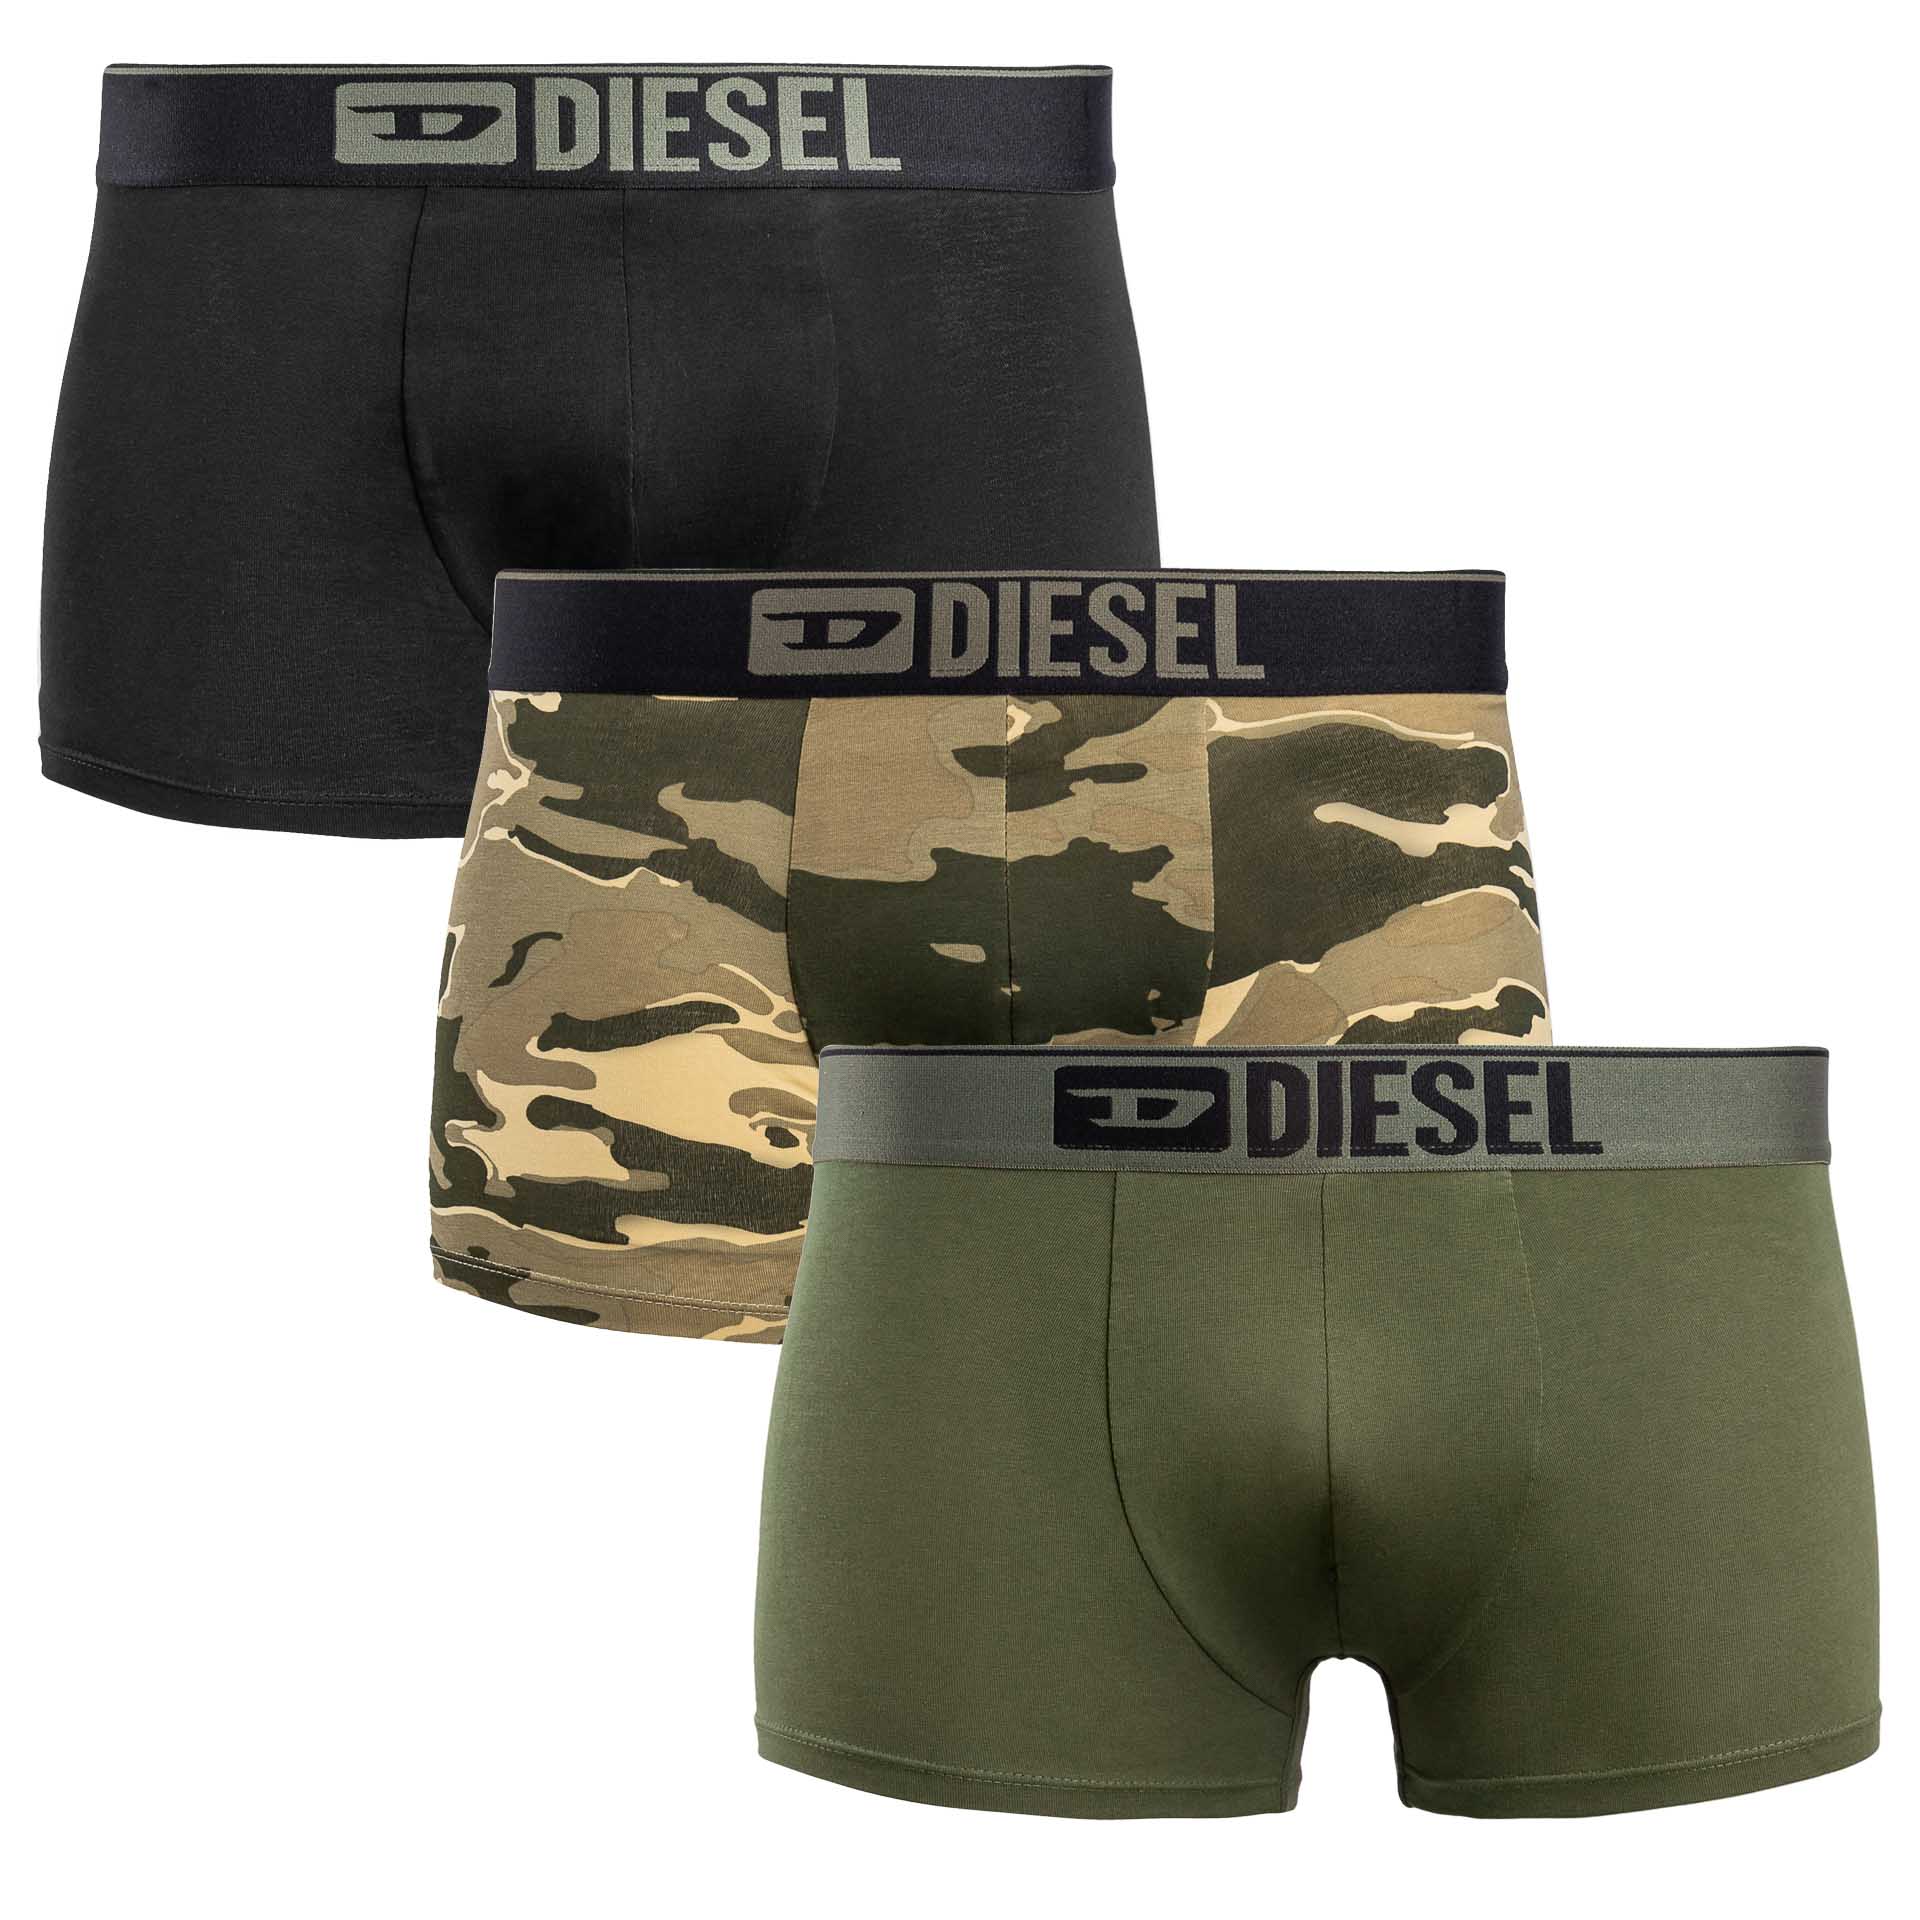 Diesel, Bokserki męskie 3-pack, rozmiar XL - Diesel